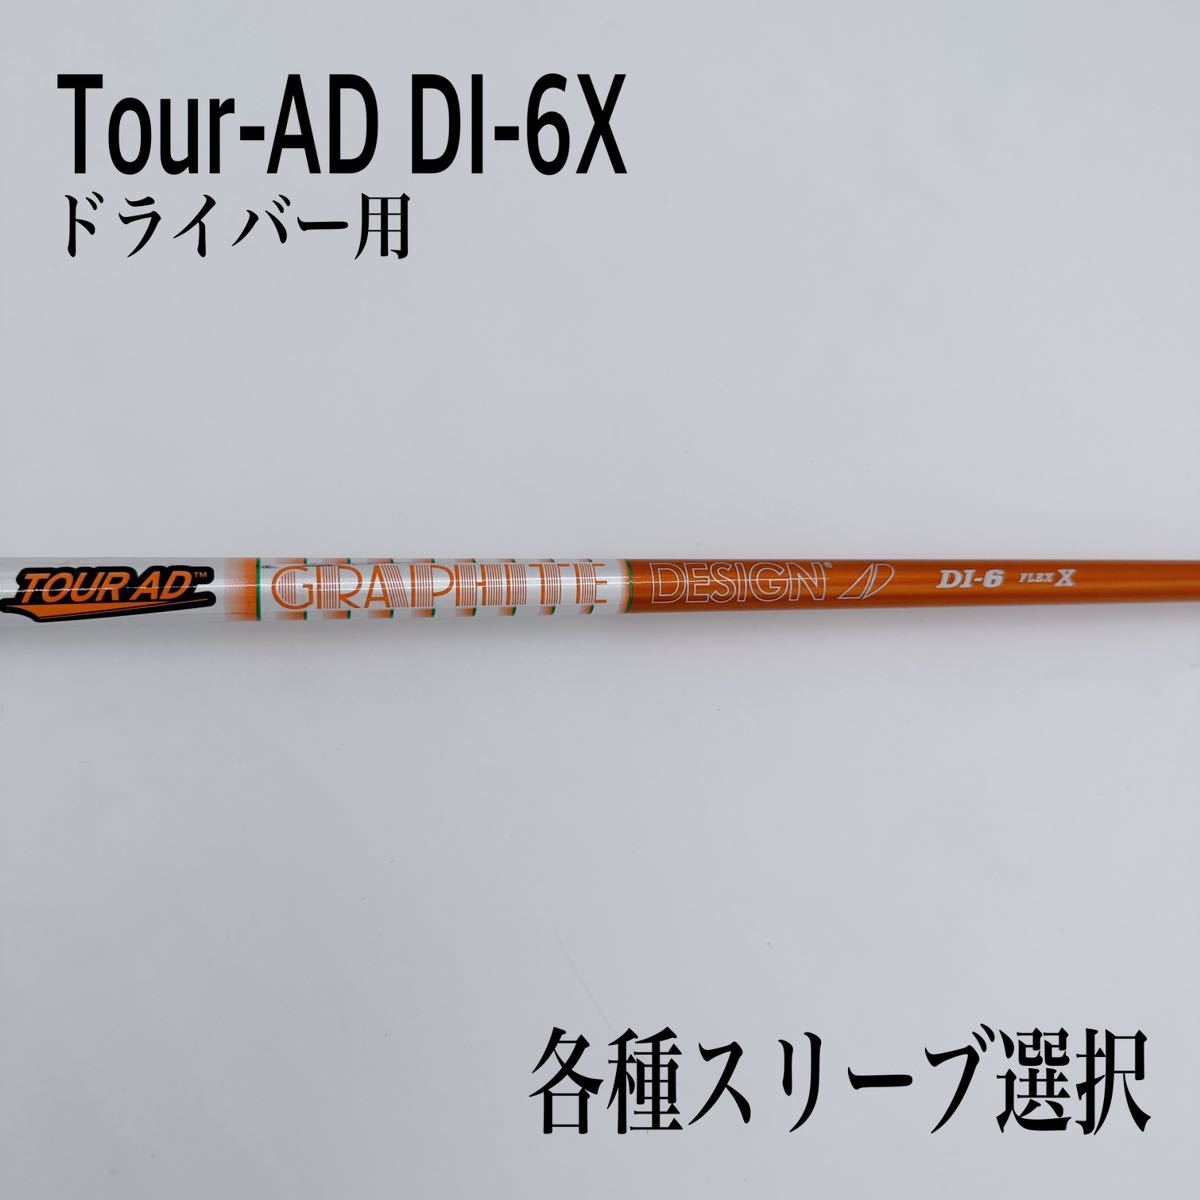 【初回限定】 Tour-AD ツアーAD DI-6X ドライバー グラファイトデザイン